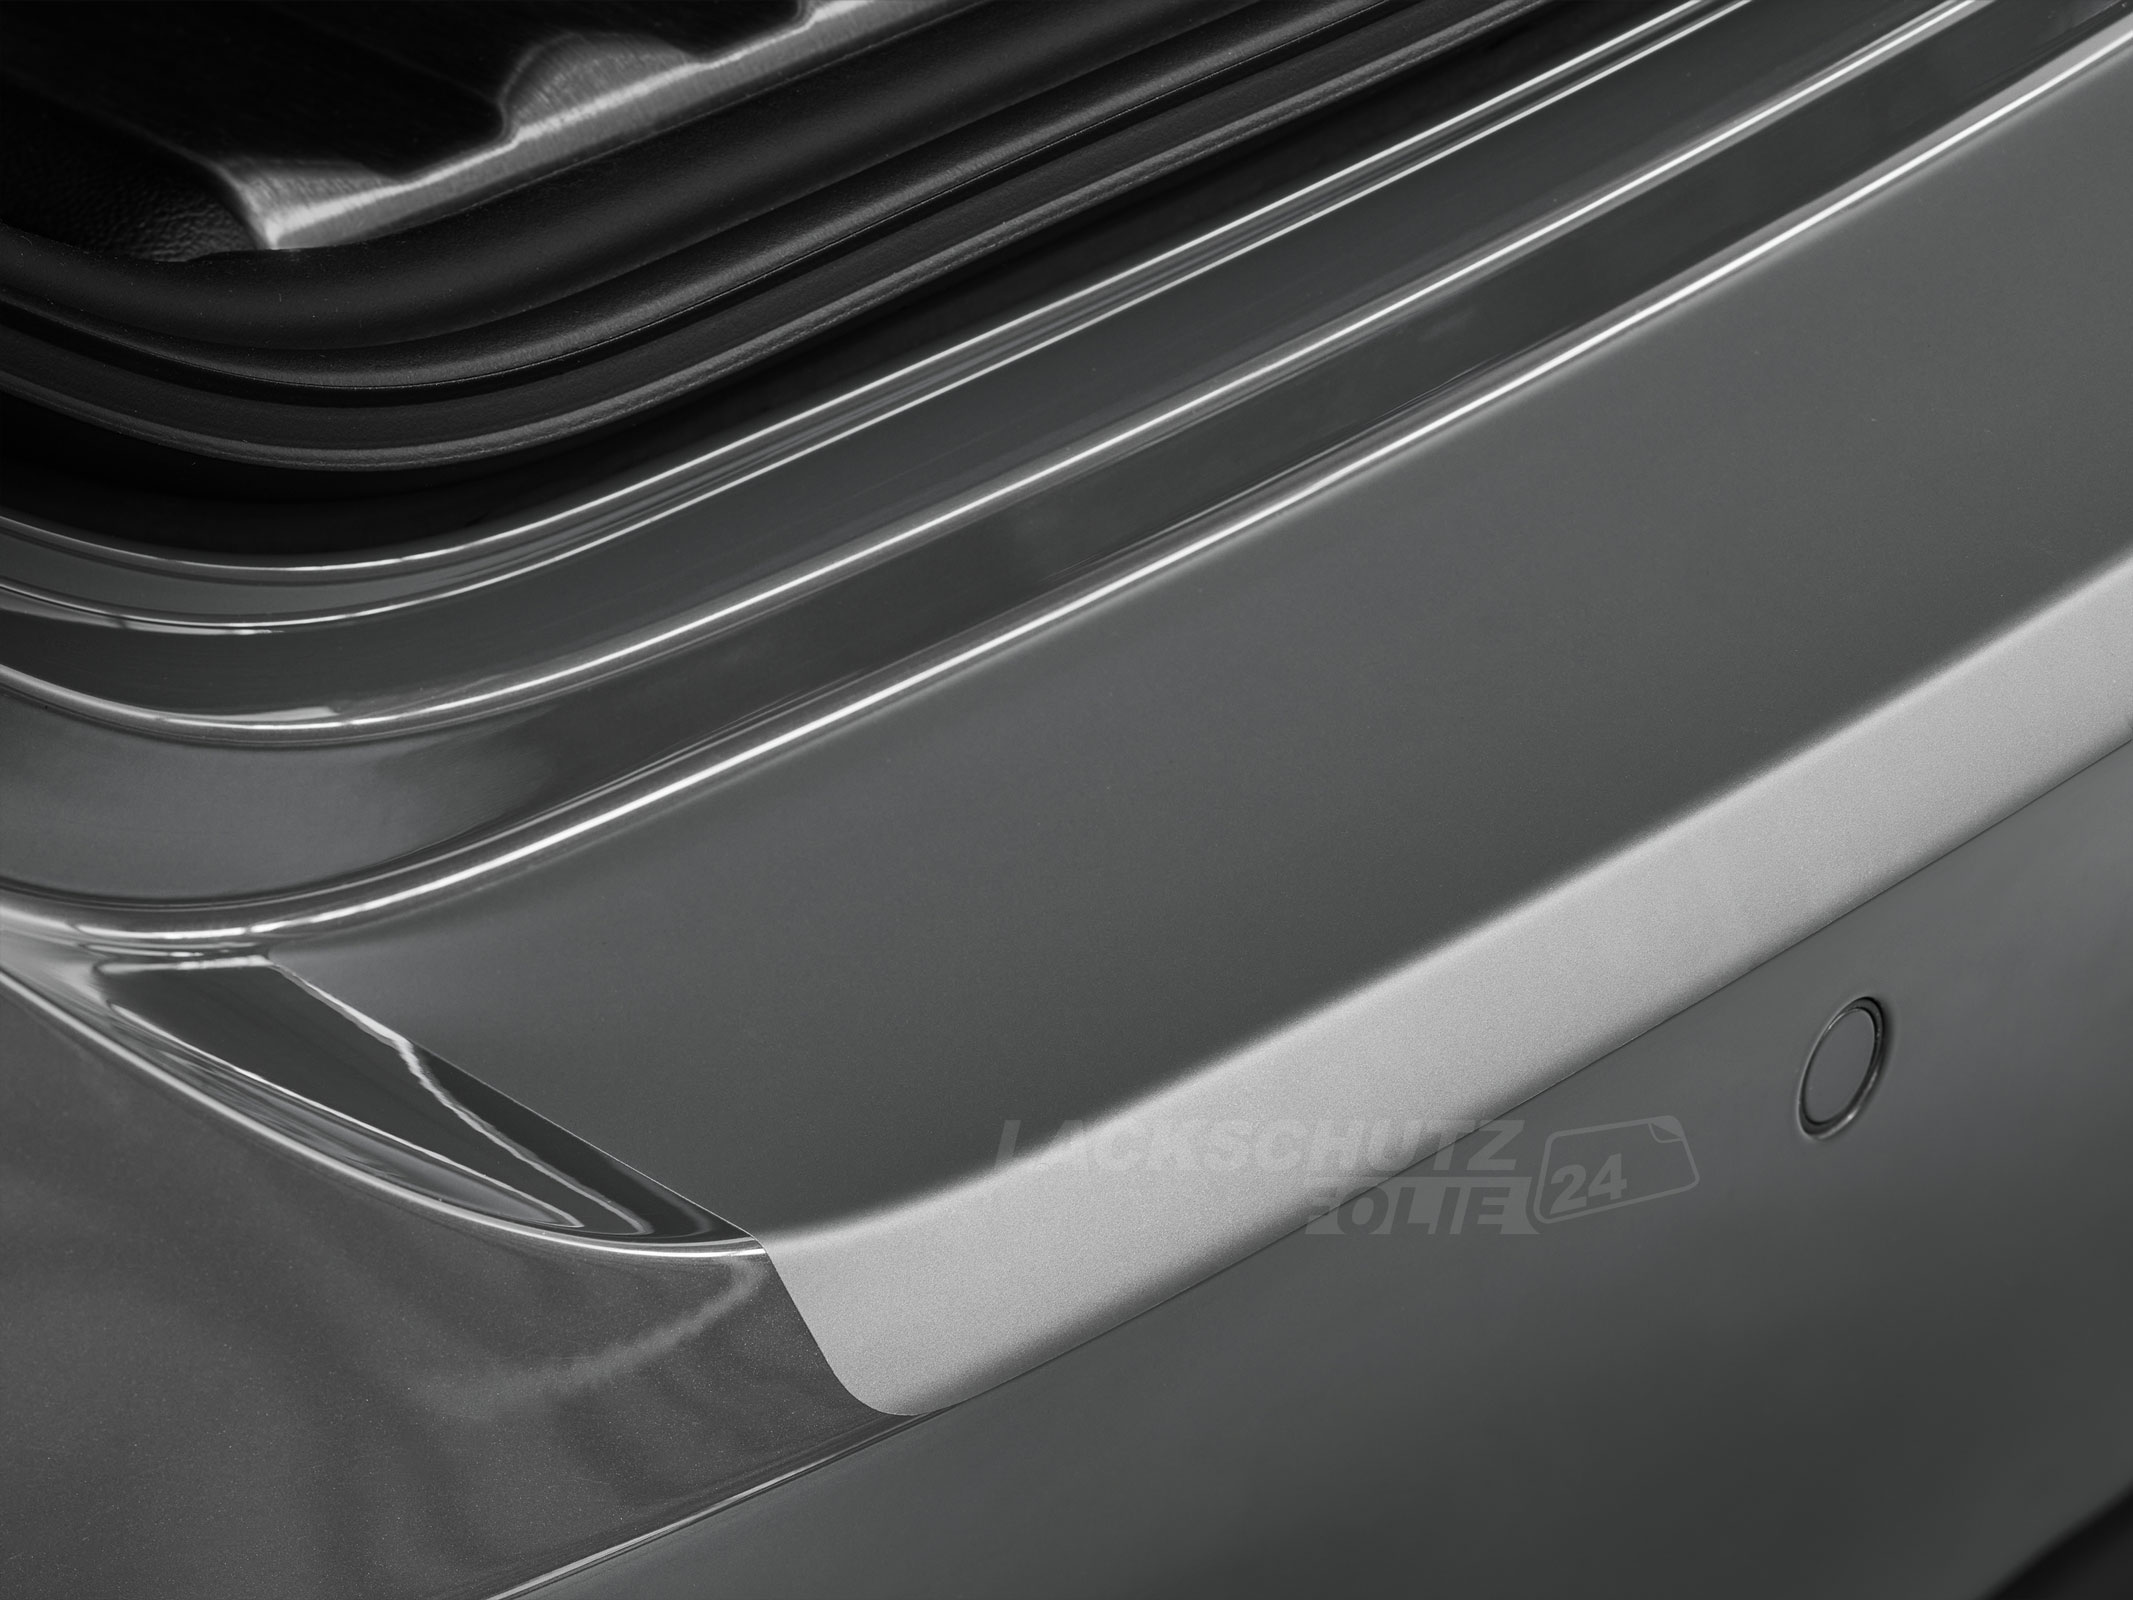 Ladekantenschutzfolie - Transparent Glatt MATT für Ford Transit Connect ab BJ 2014